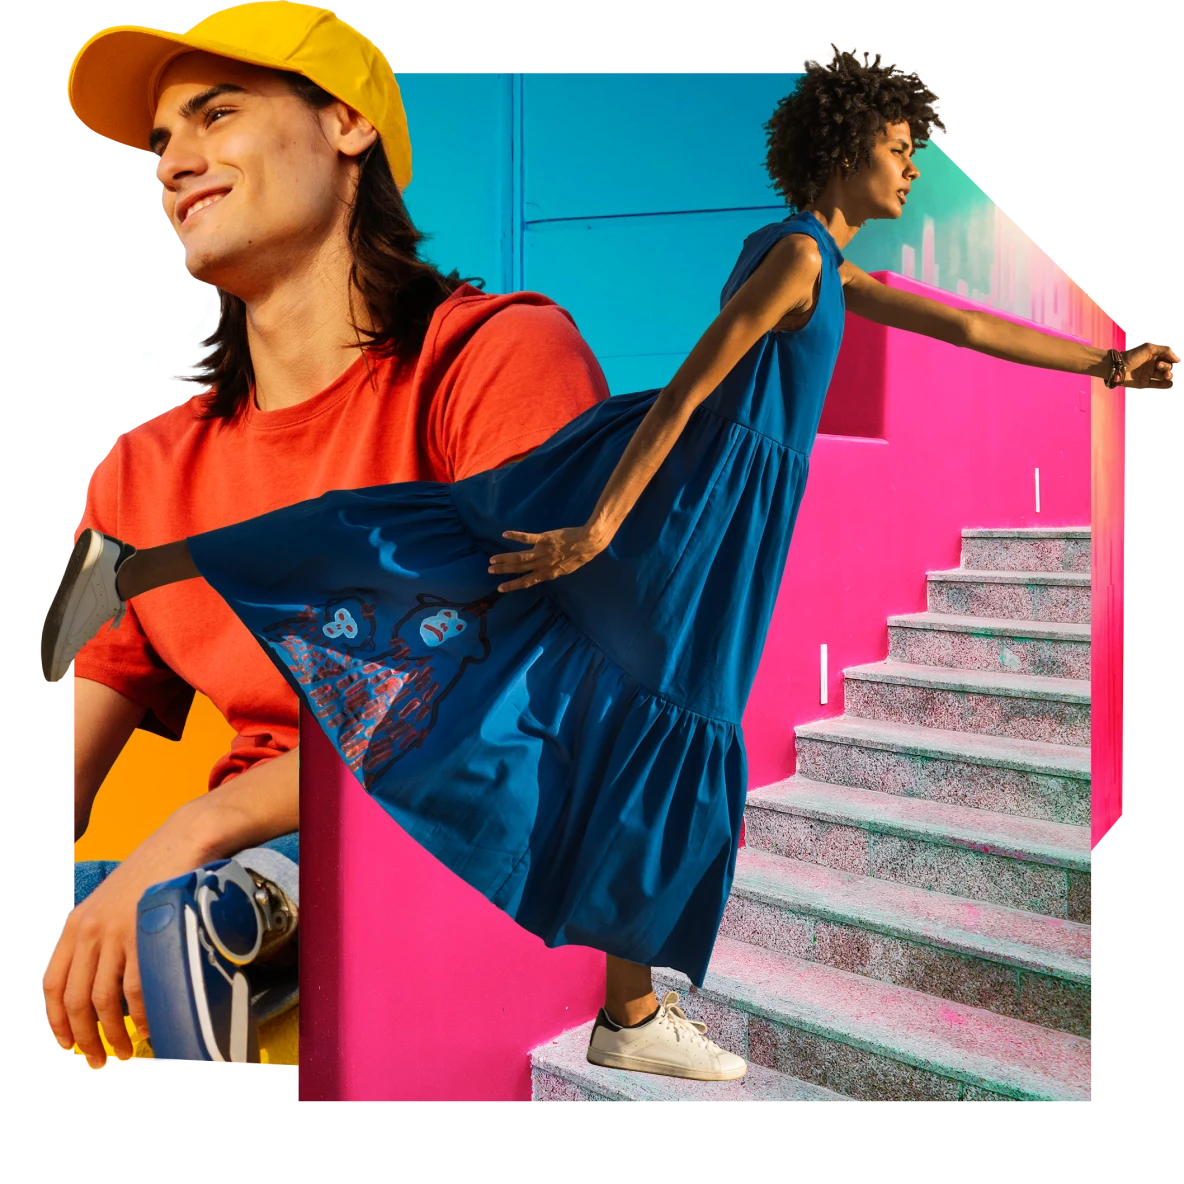 Homme blanc avec des prothèses de jambe et de longs cheveux bruns habillé d'une casquette de baseball jaune vif et d'un t-shirt orange. Femme noire en robe bleue aérienne qui monte des marches grises dans un escalier rose. Arrière-plan bleu.